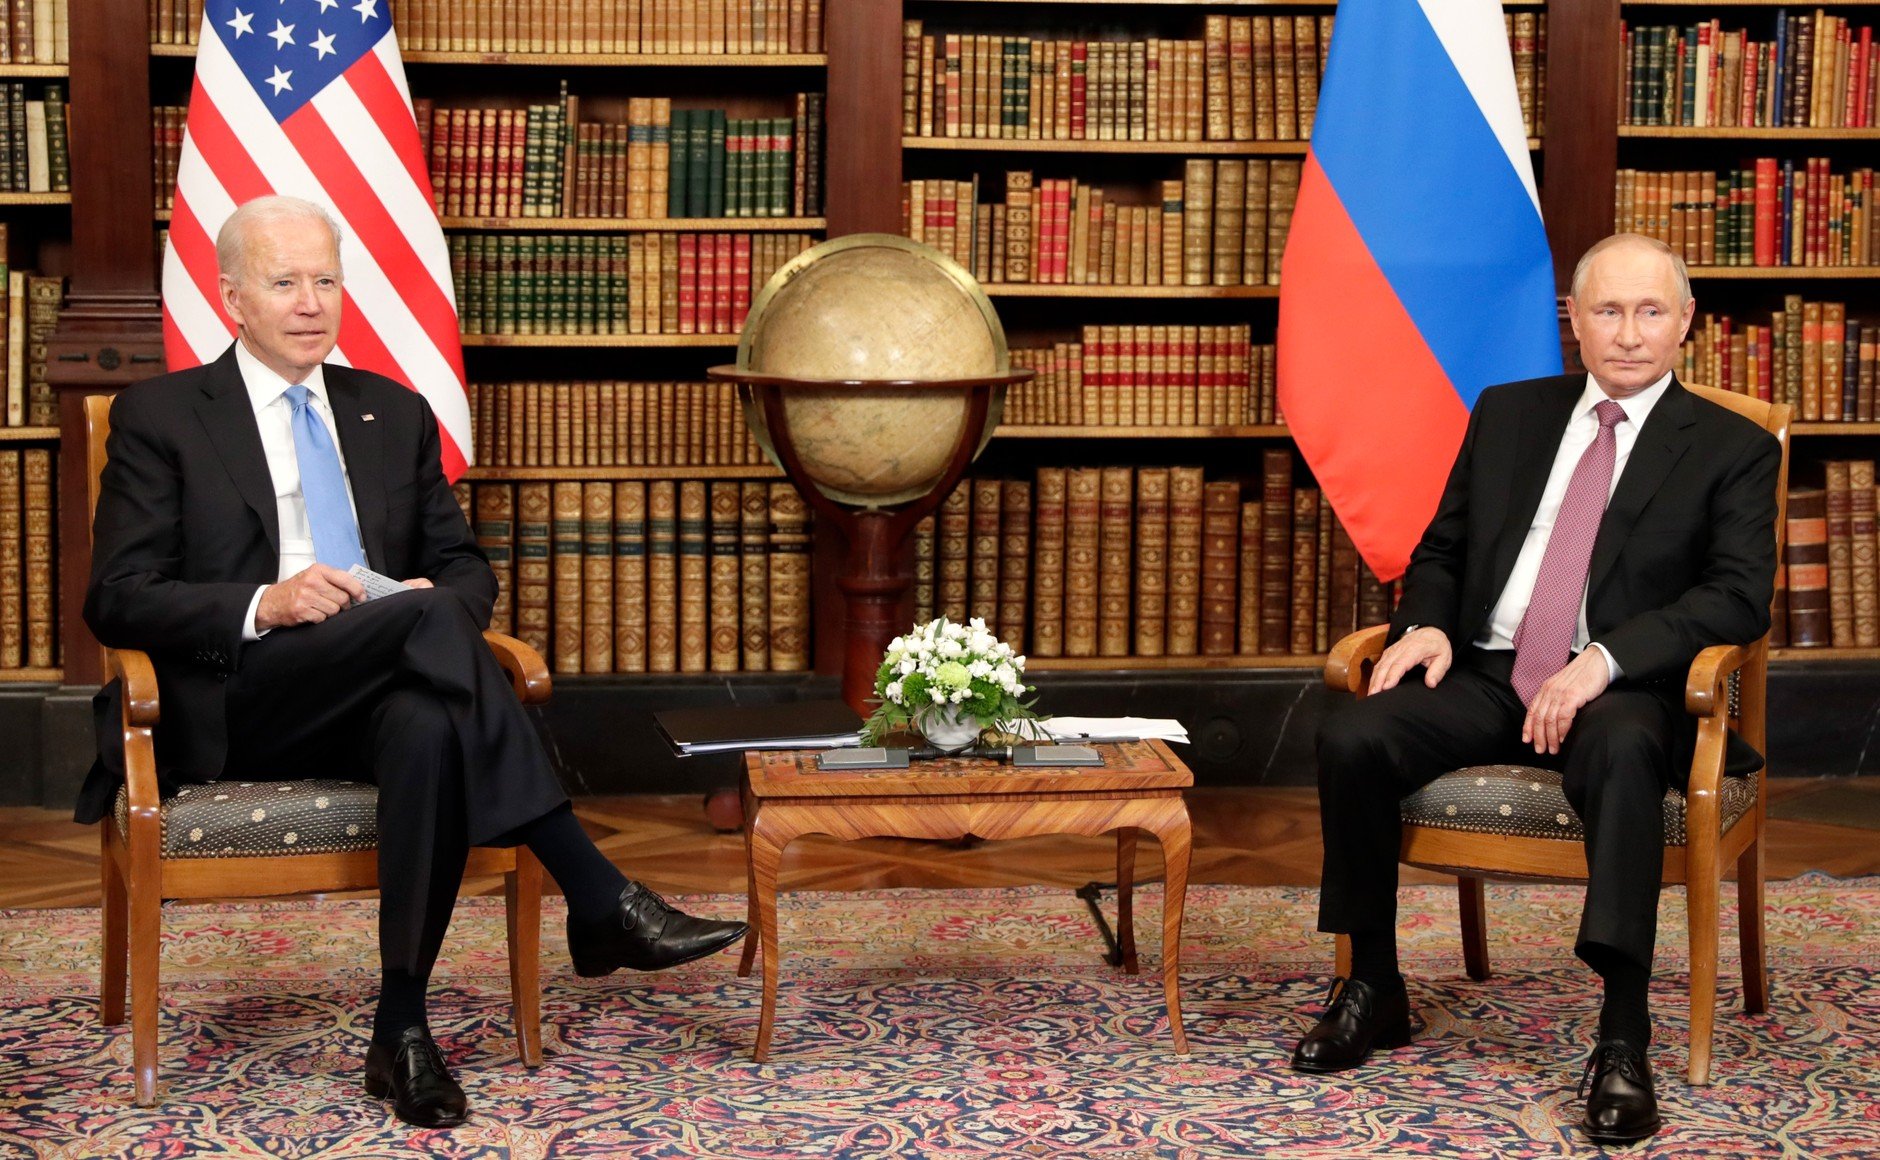  Cum îi vede Biden în privat pe unii lideri străini: Putin e tipul fără prieteni şi cu arme nucleare